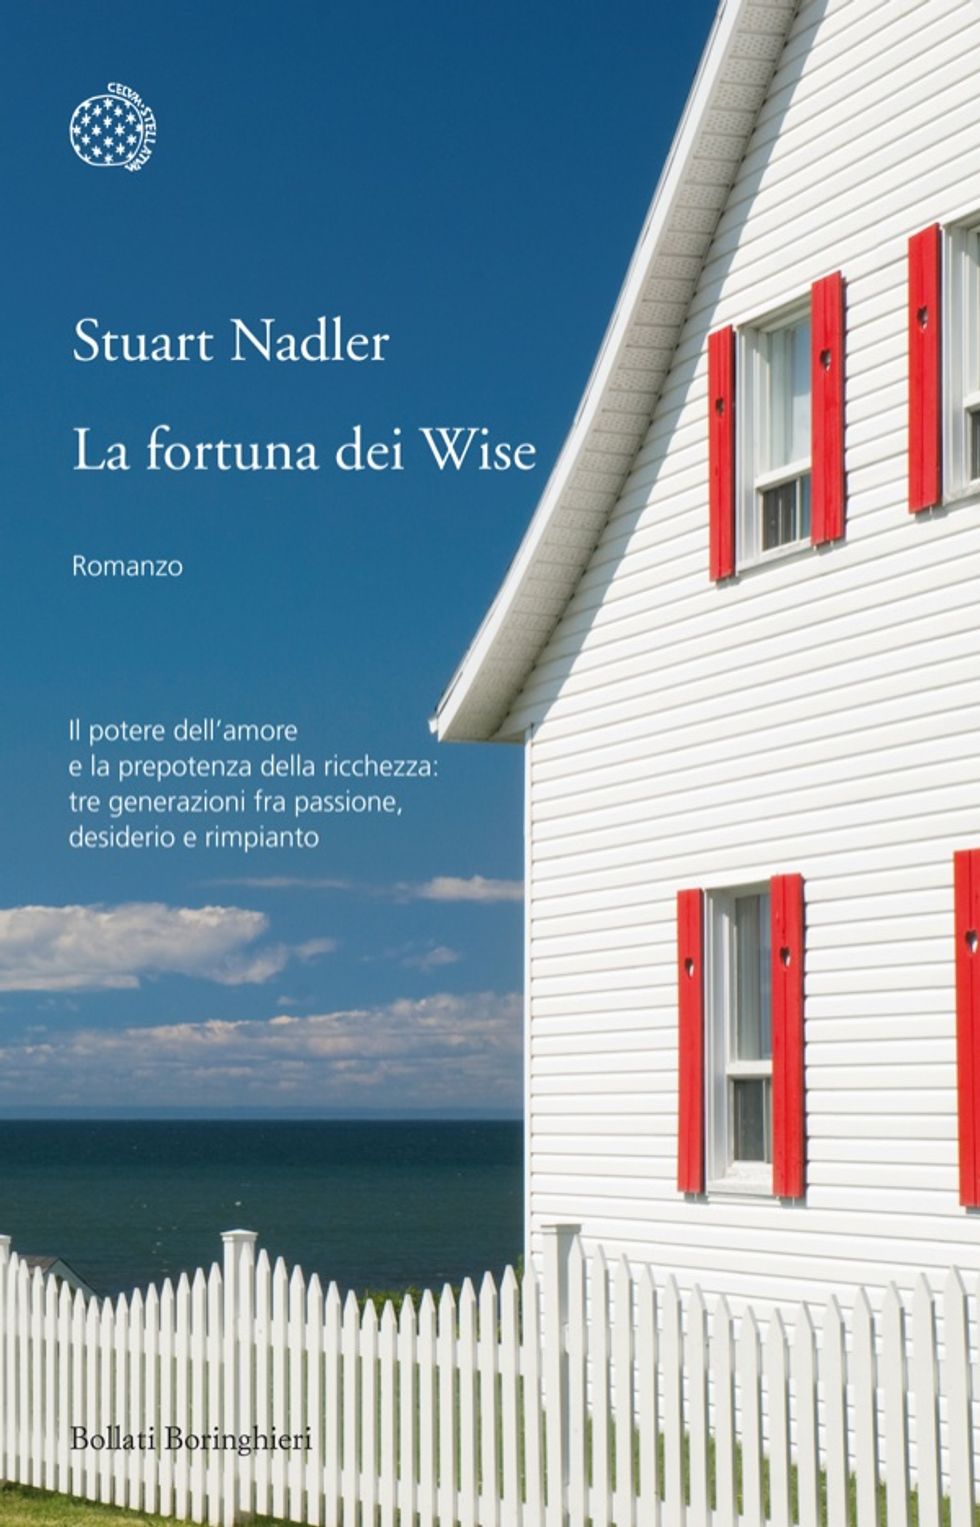 Stuart Nadler: "Perché ho scritto un romanzo sociale"